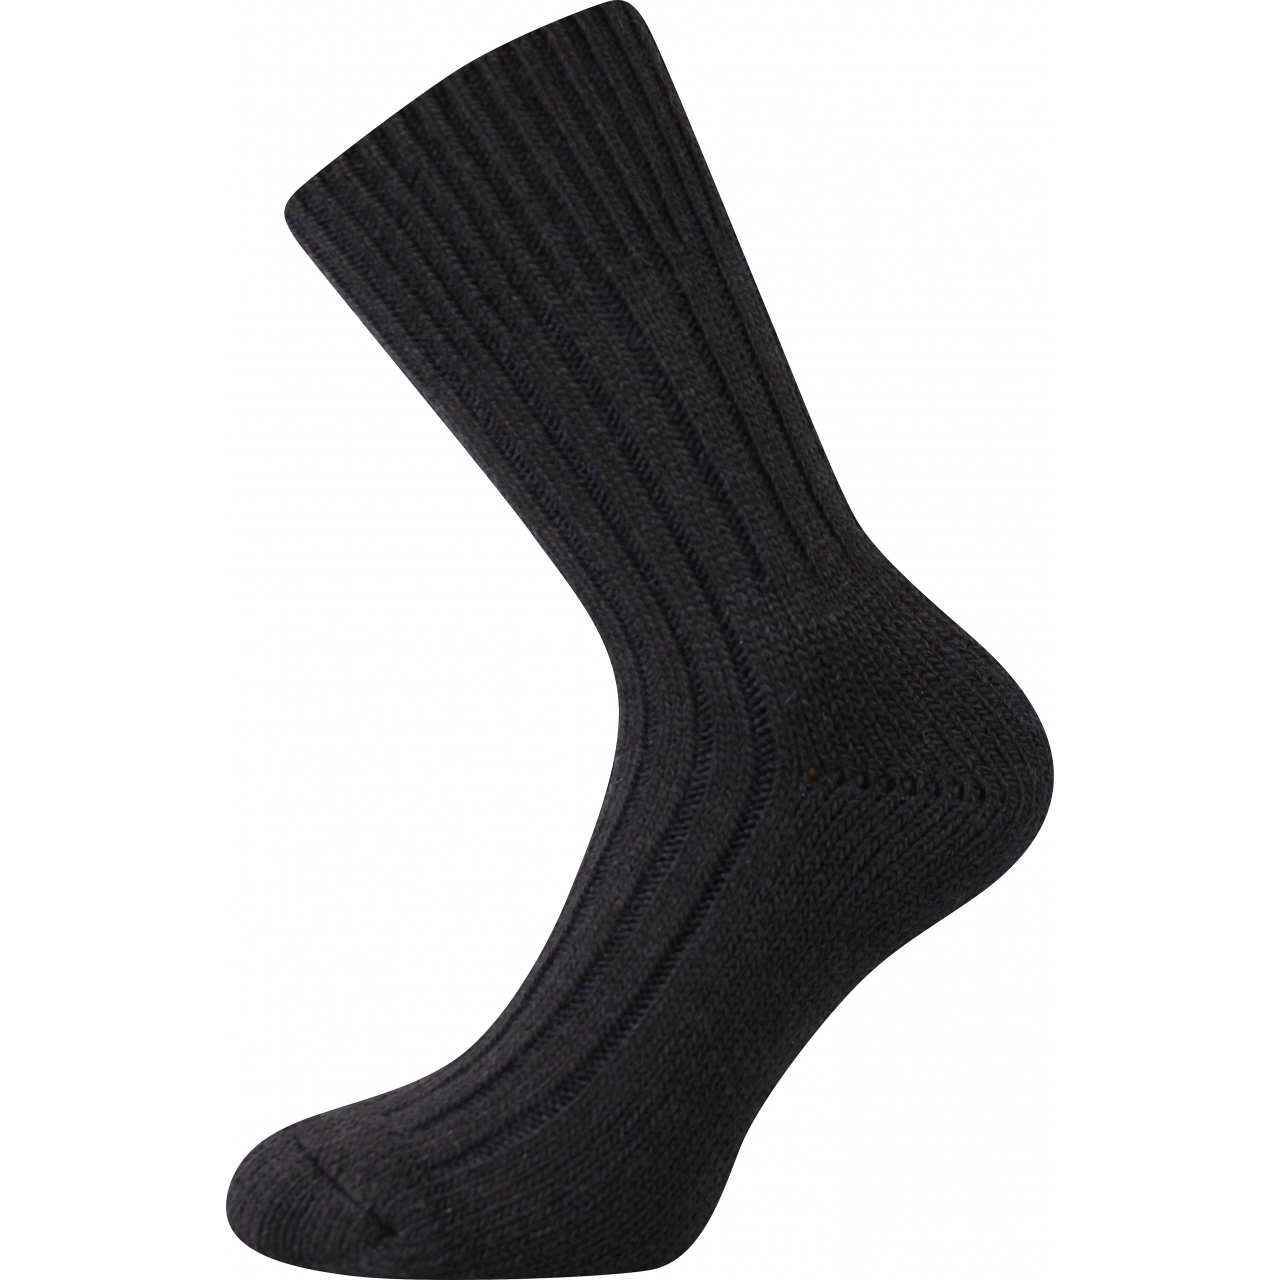 Ponožky unisex vlněné Voxx Willie - černé, 35-38